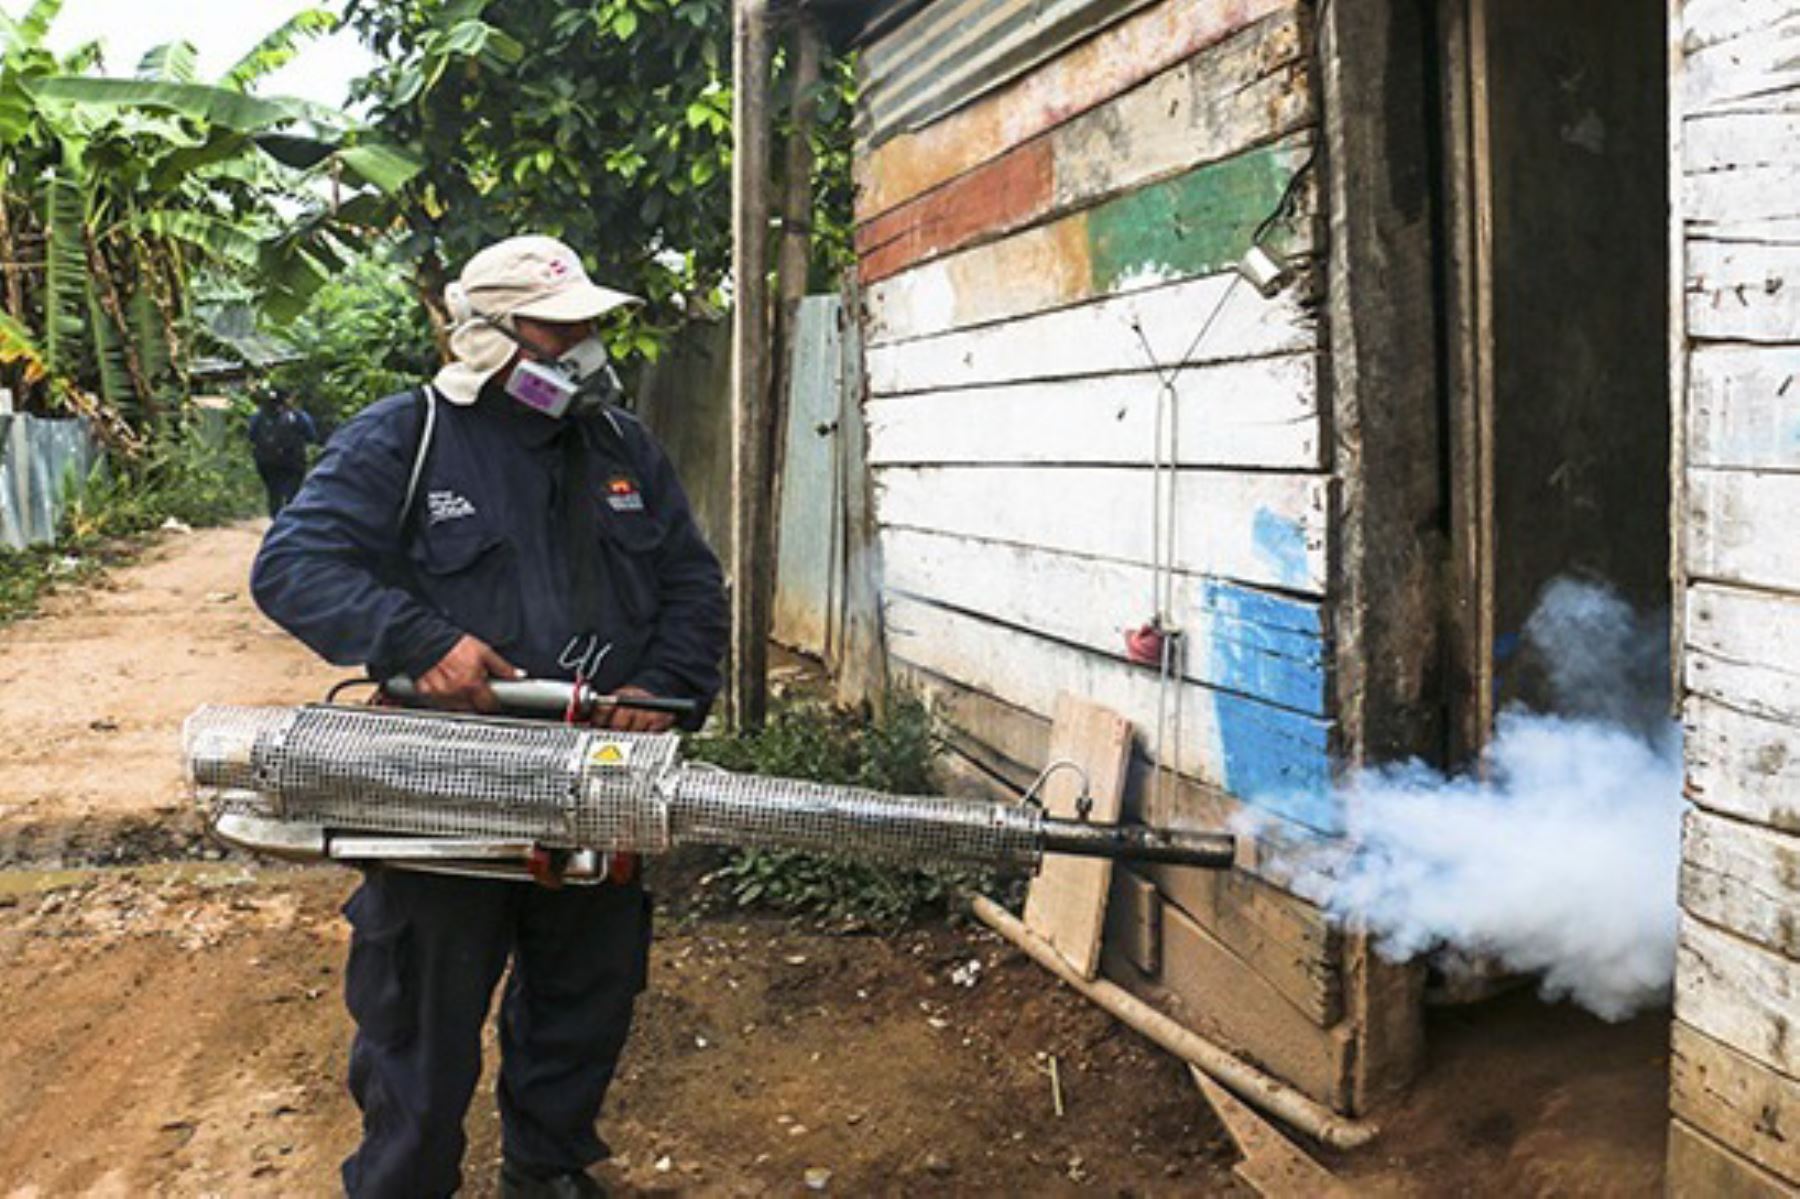 Para conocer el detalle del plan de acciones que desarrolla el Ministerio de Salud ante los casos de dengue reportados en esta zona, la ministra Elizabeth Hinostroza llegó hoy a la ciudad de Quillabamba, junto a un equipo técnico que evaluará la capacidad de respuesta de la red local de salud. ANDINA/archivo